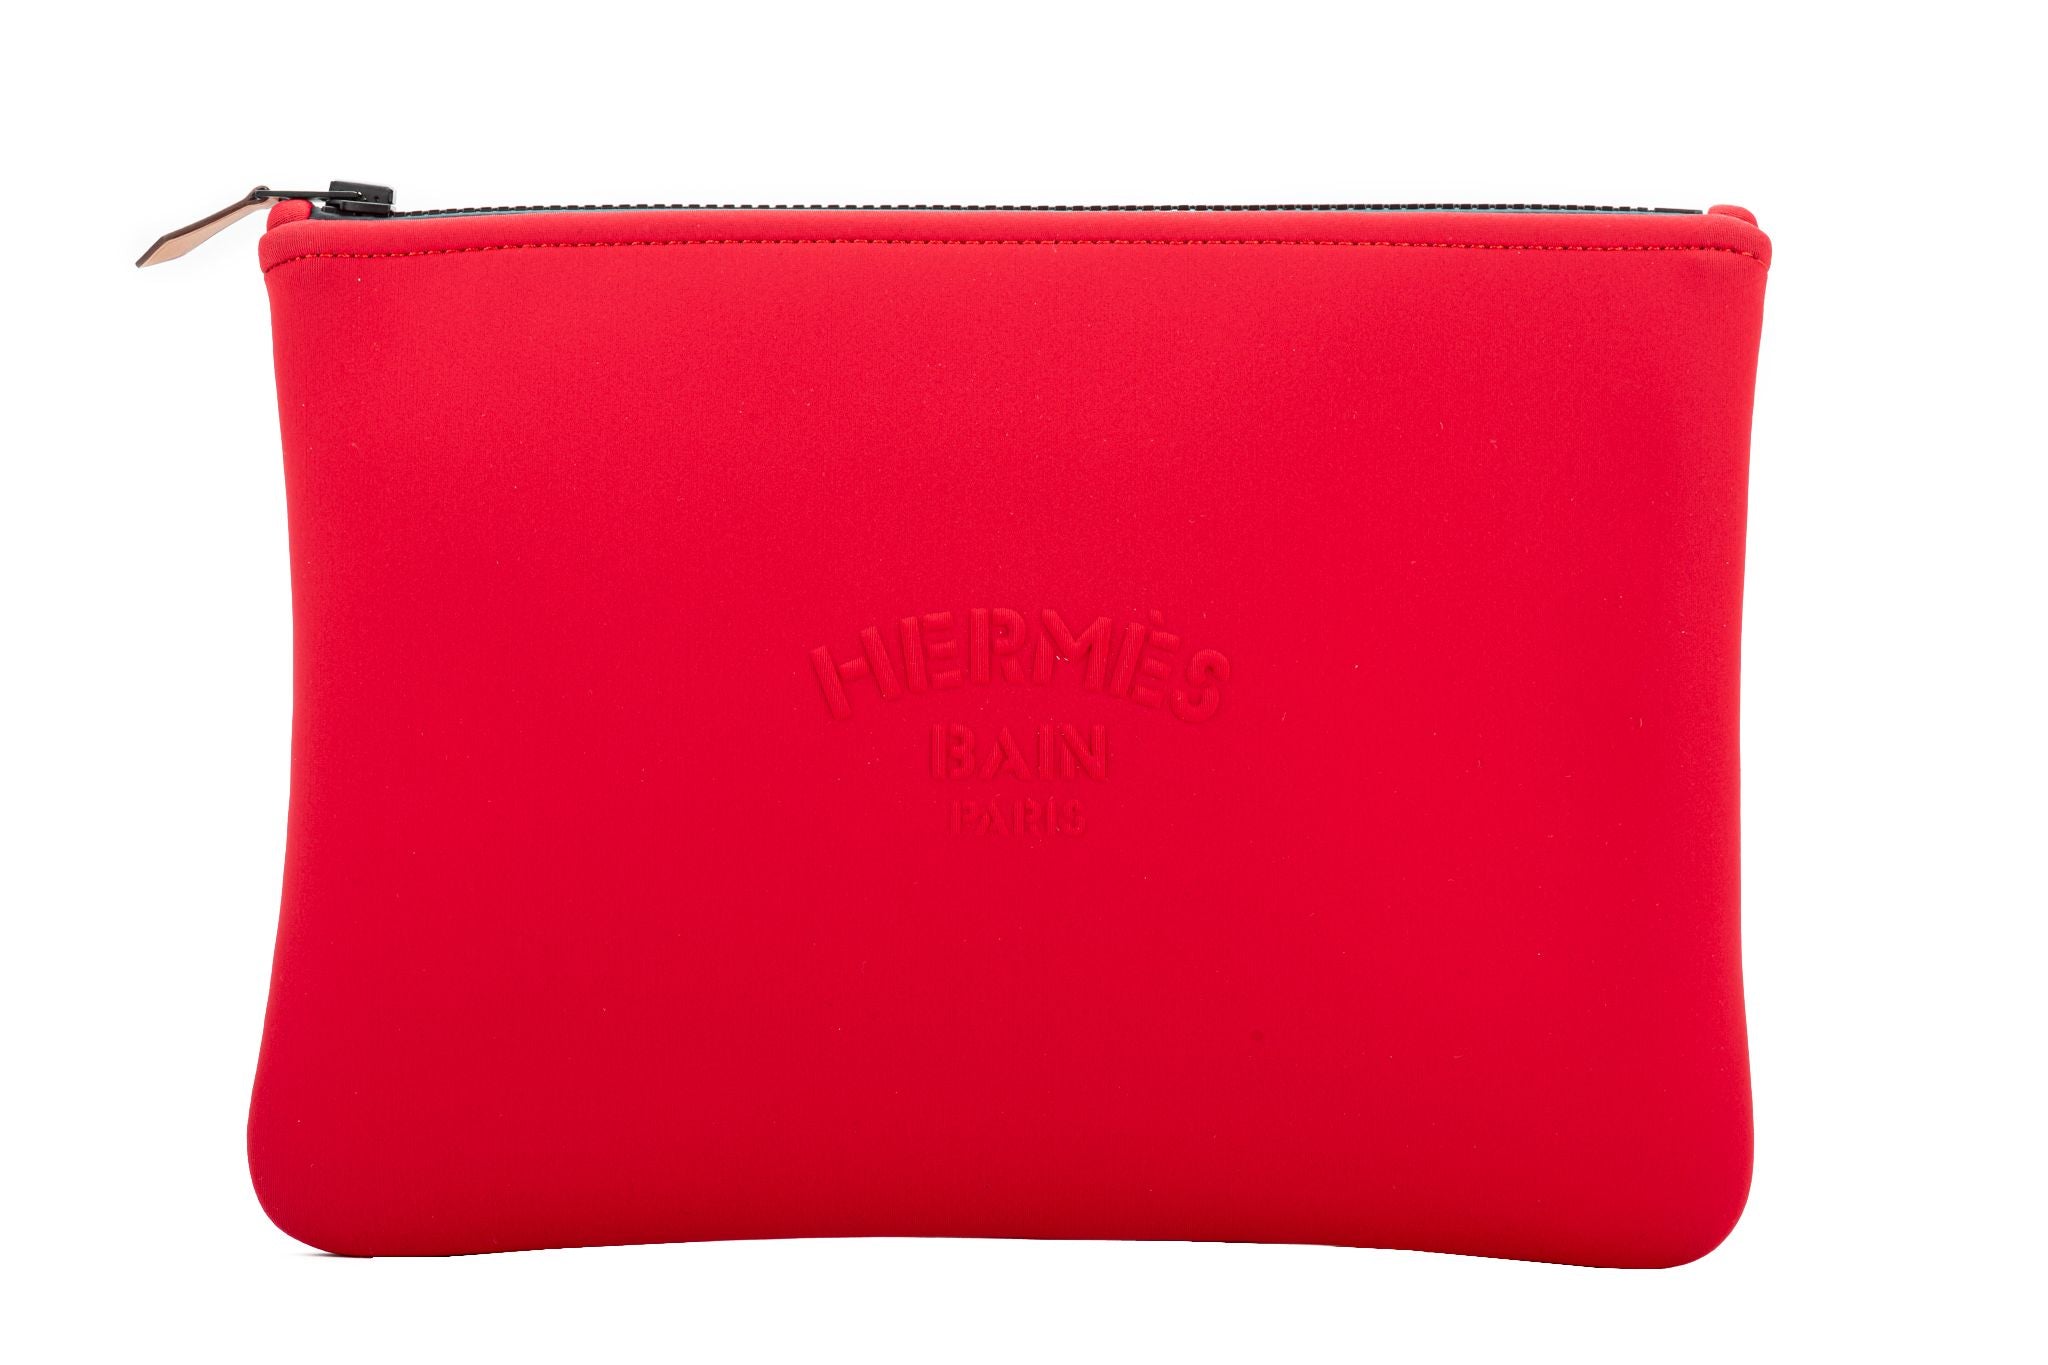 Hermes Bain Medium Size Neoprene Pouch For Sale at 1stDibs